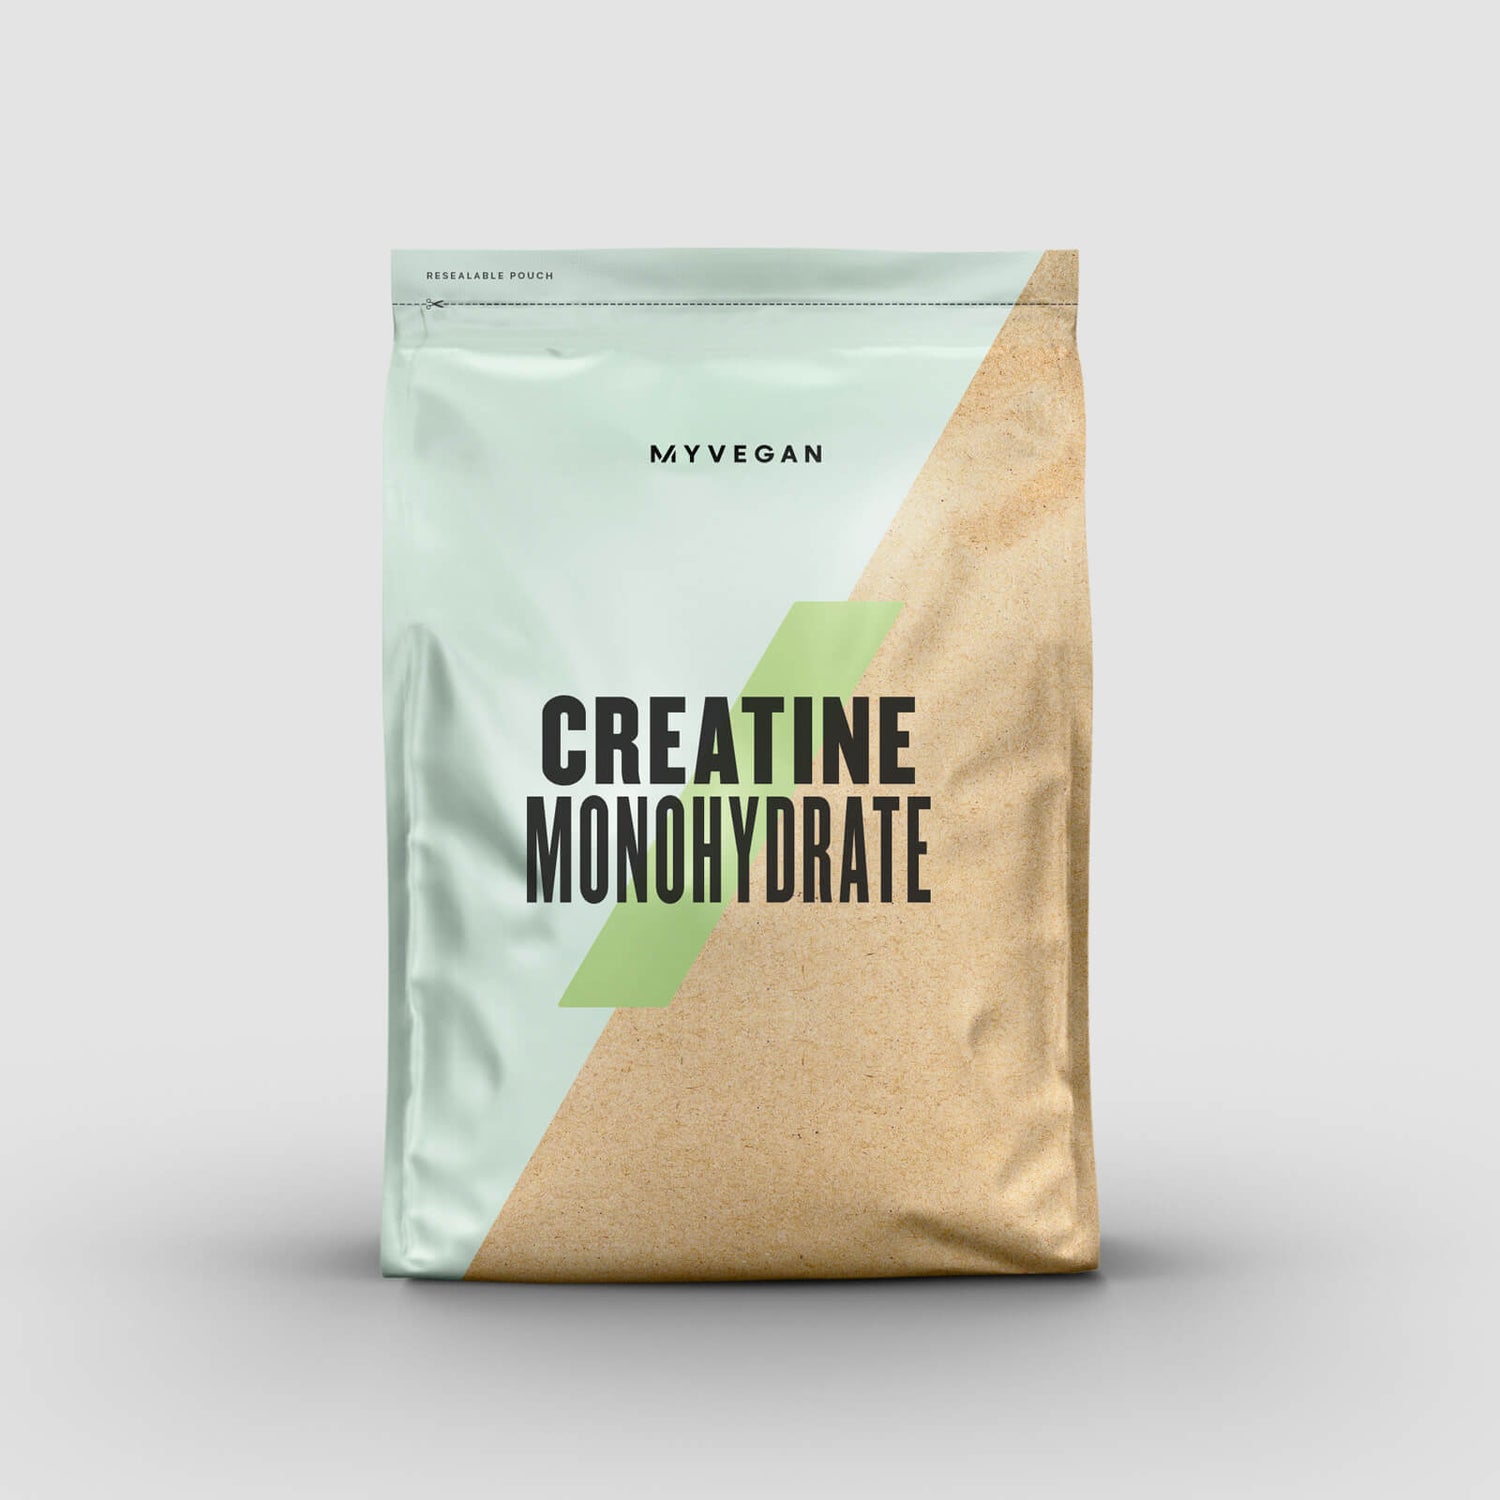 Myvegan Creatine Monohydrate Powder - 250g - Unflavoured